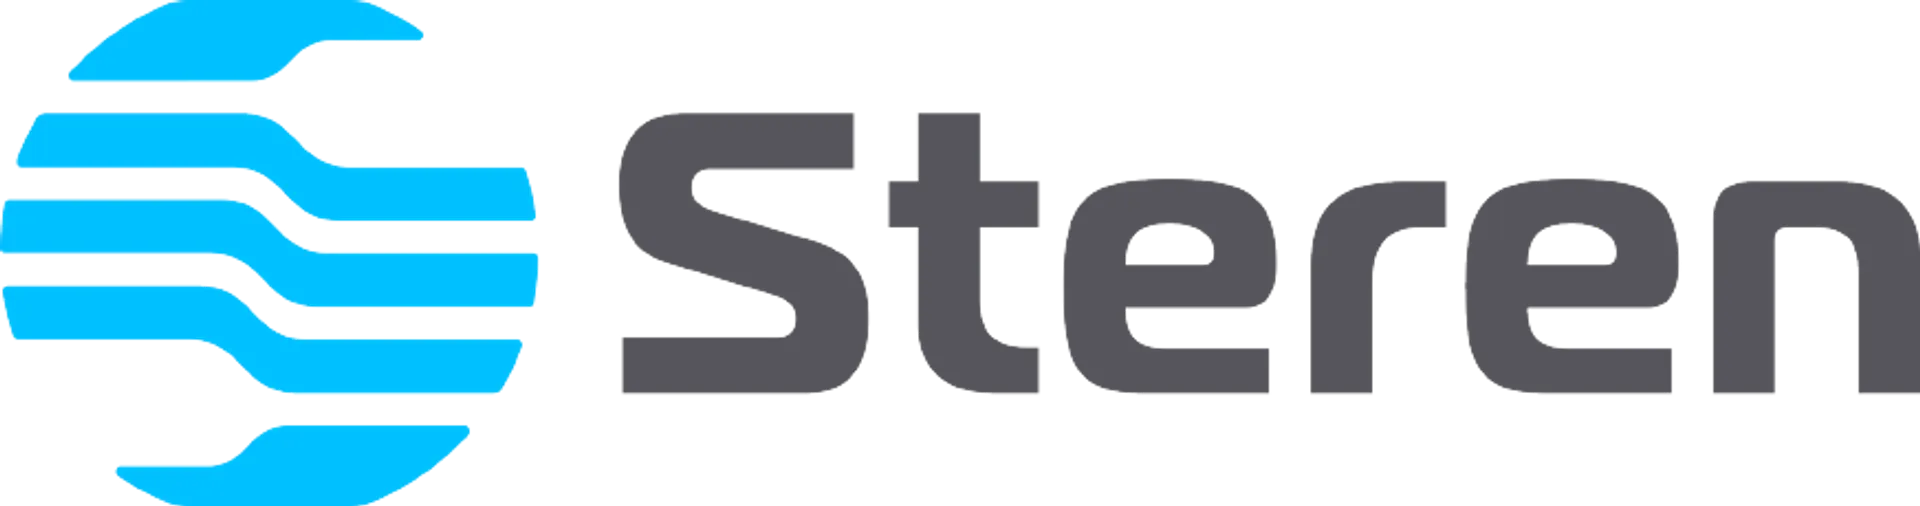 STEREN logo